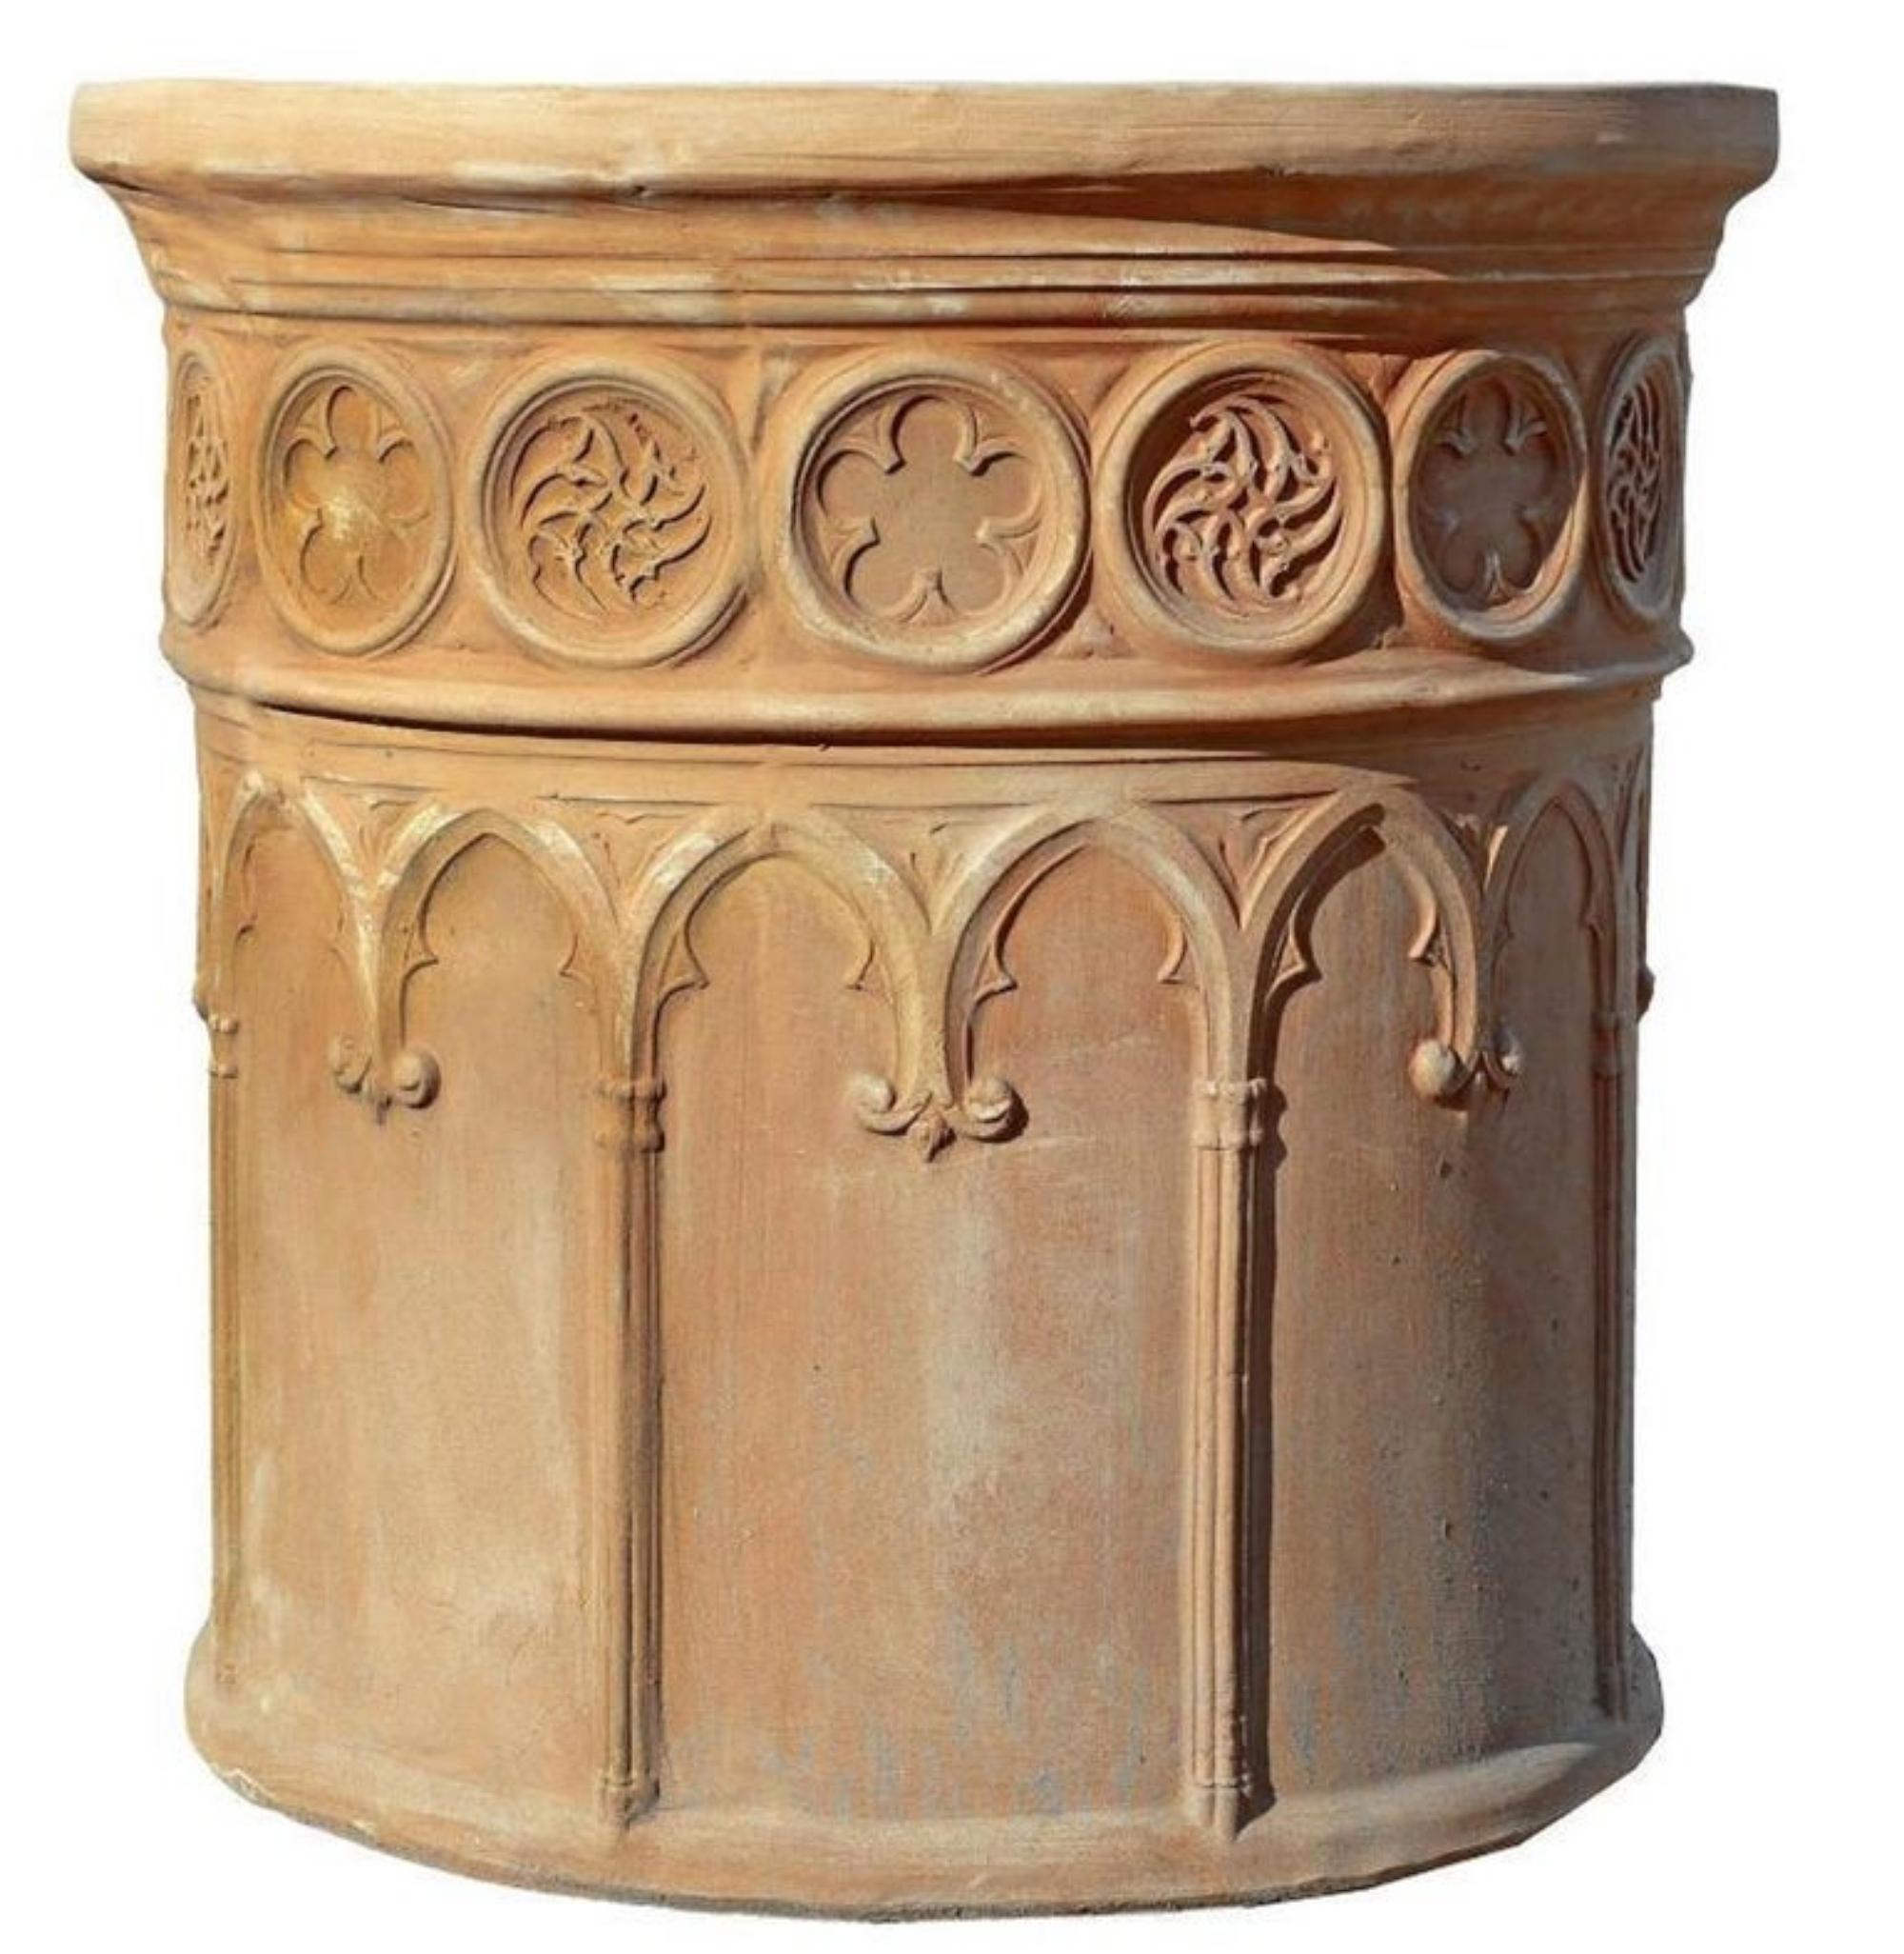 Corinthian vase.
Tuscan terracotta.
20th Century.
Measures: diameter: 60 cm.
Internal diameter: 55 cm.
Depth: 50 cm.
Good conditions.